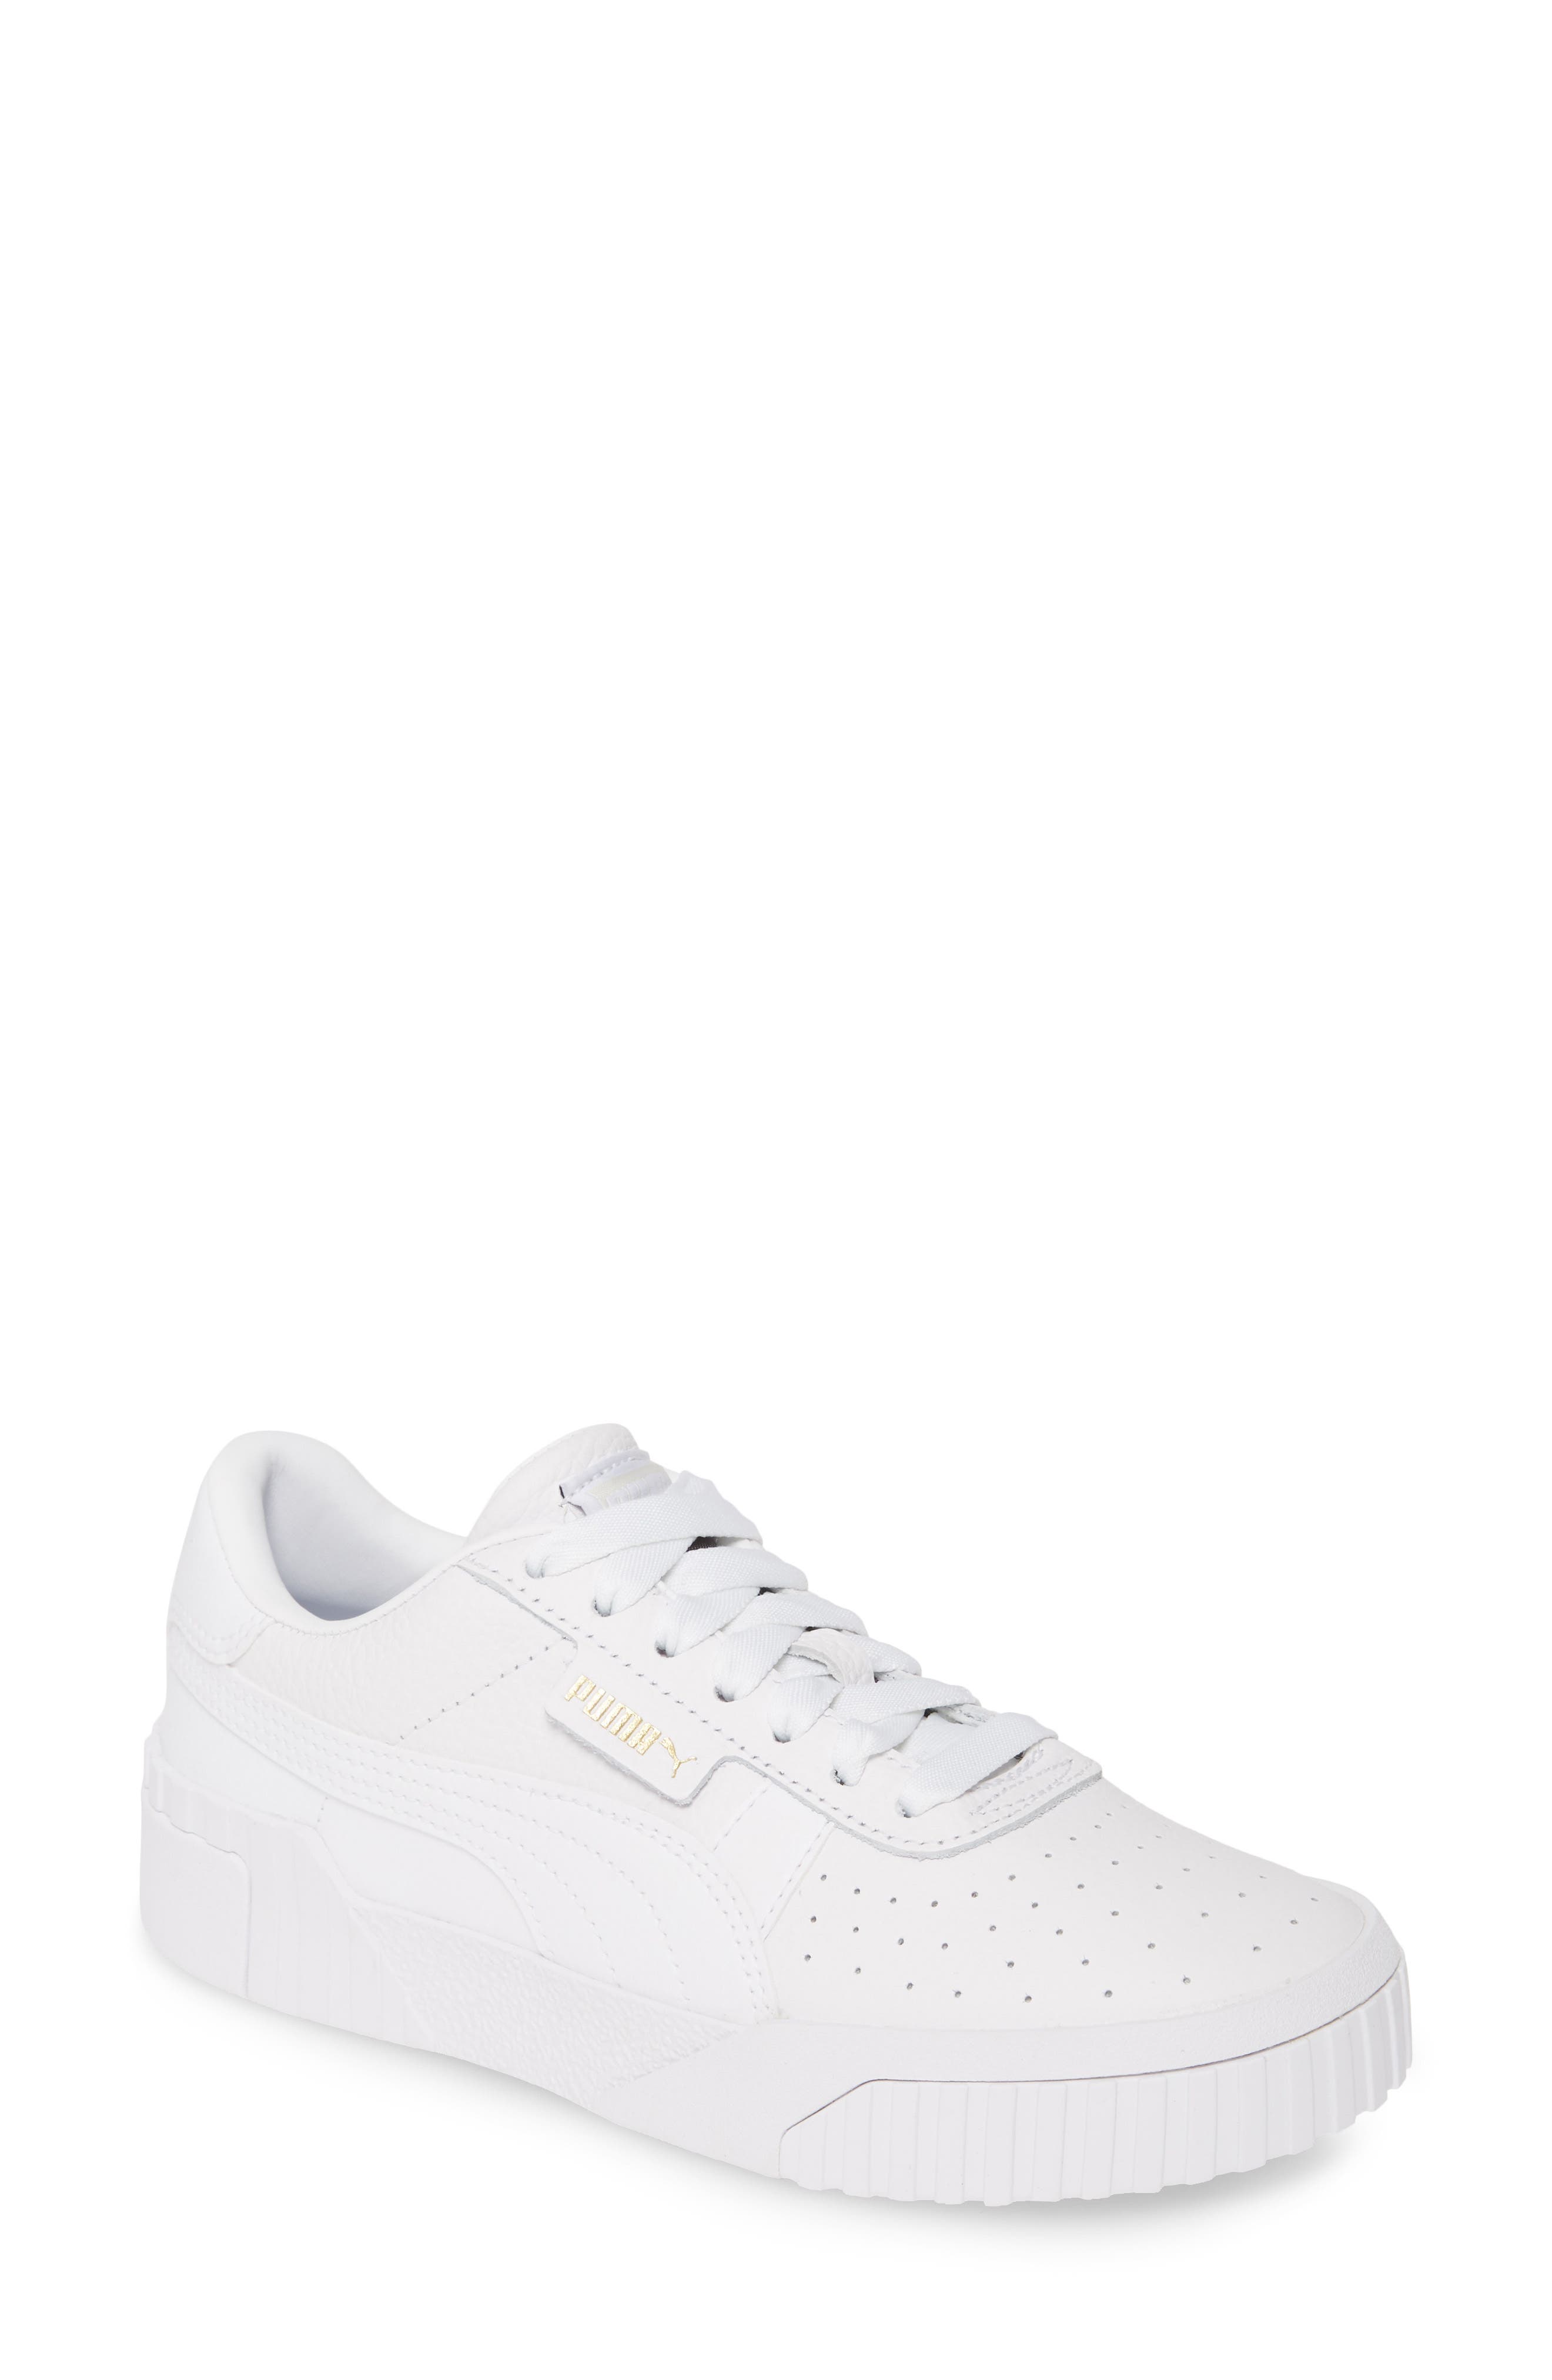 puma white cali sneakers